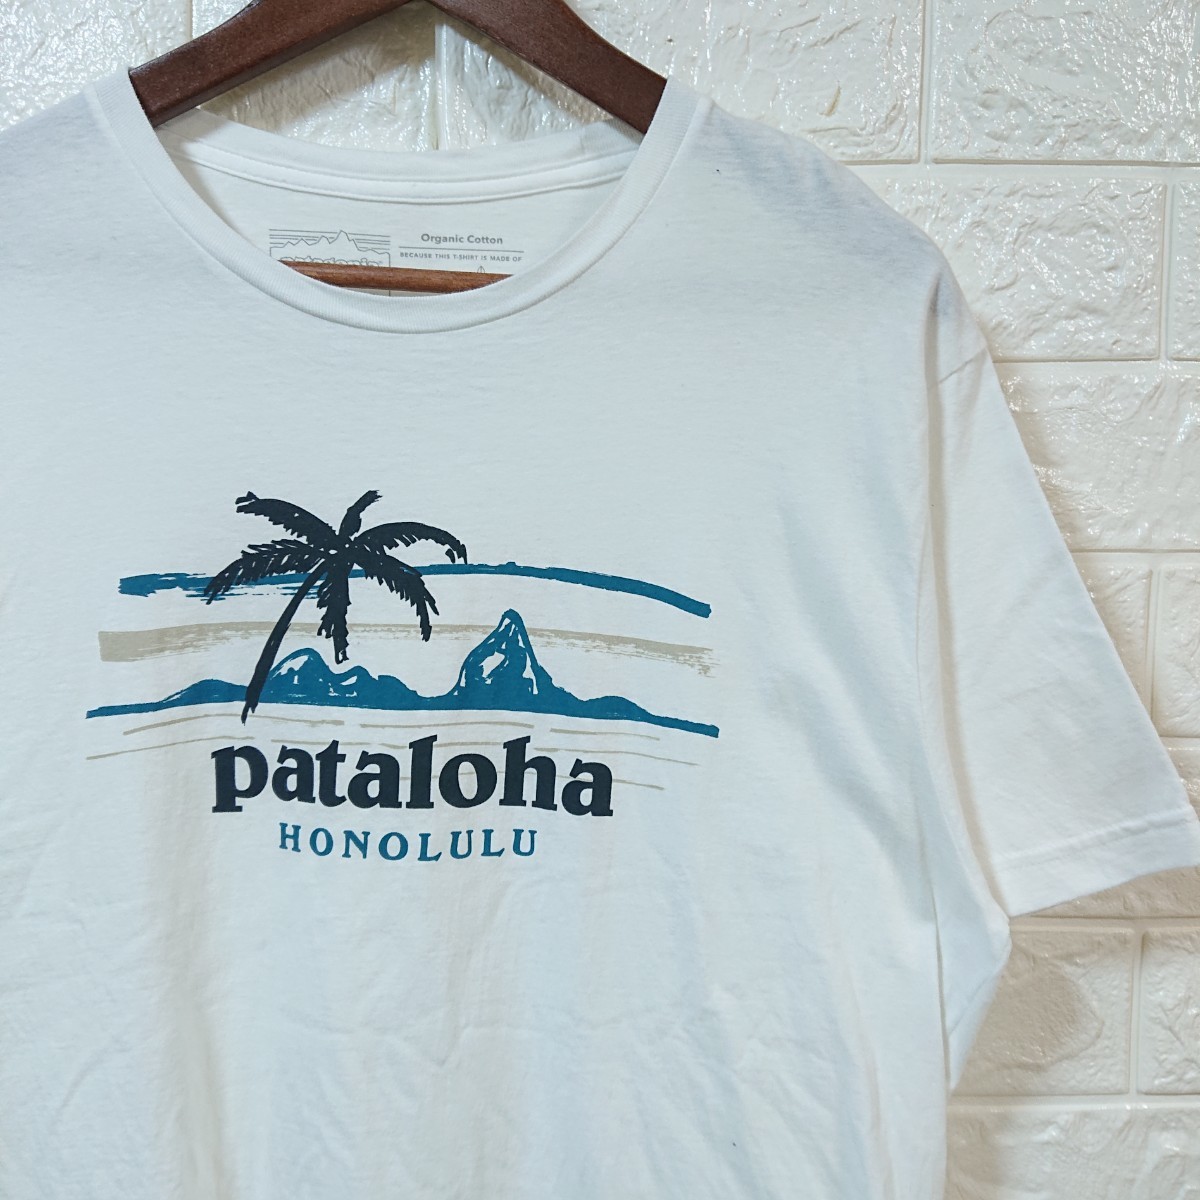 【ハワイ限定】patagonia パタゴニア pataloha パタロハ HONOLULU ホノルル Tシャツ Mサイズ ホワイト logo t-shirt tee hawaii_画像1